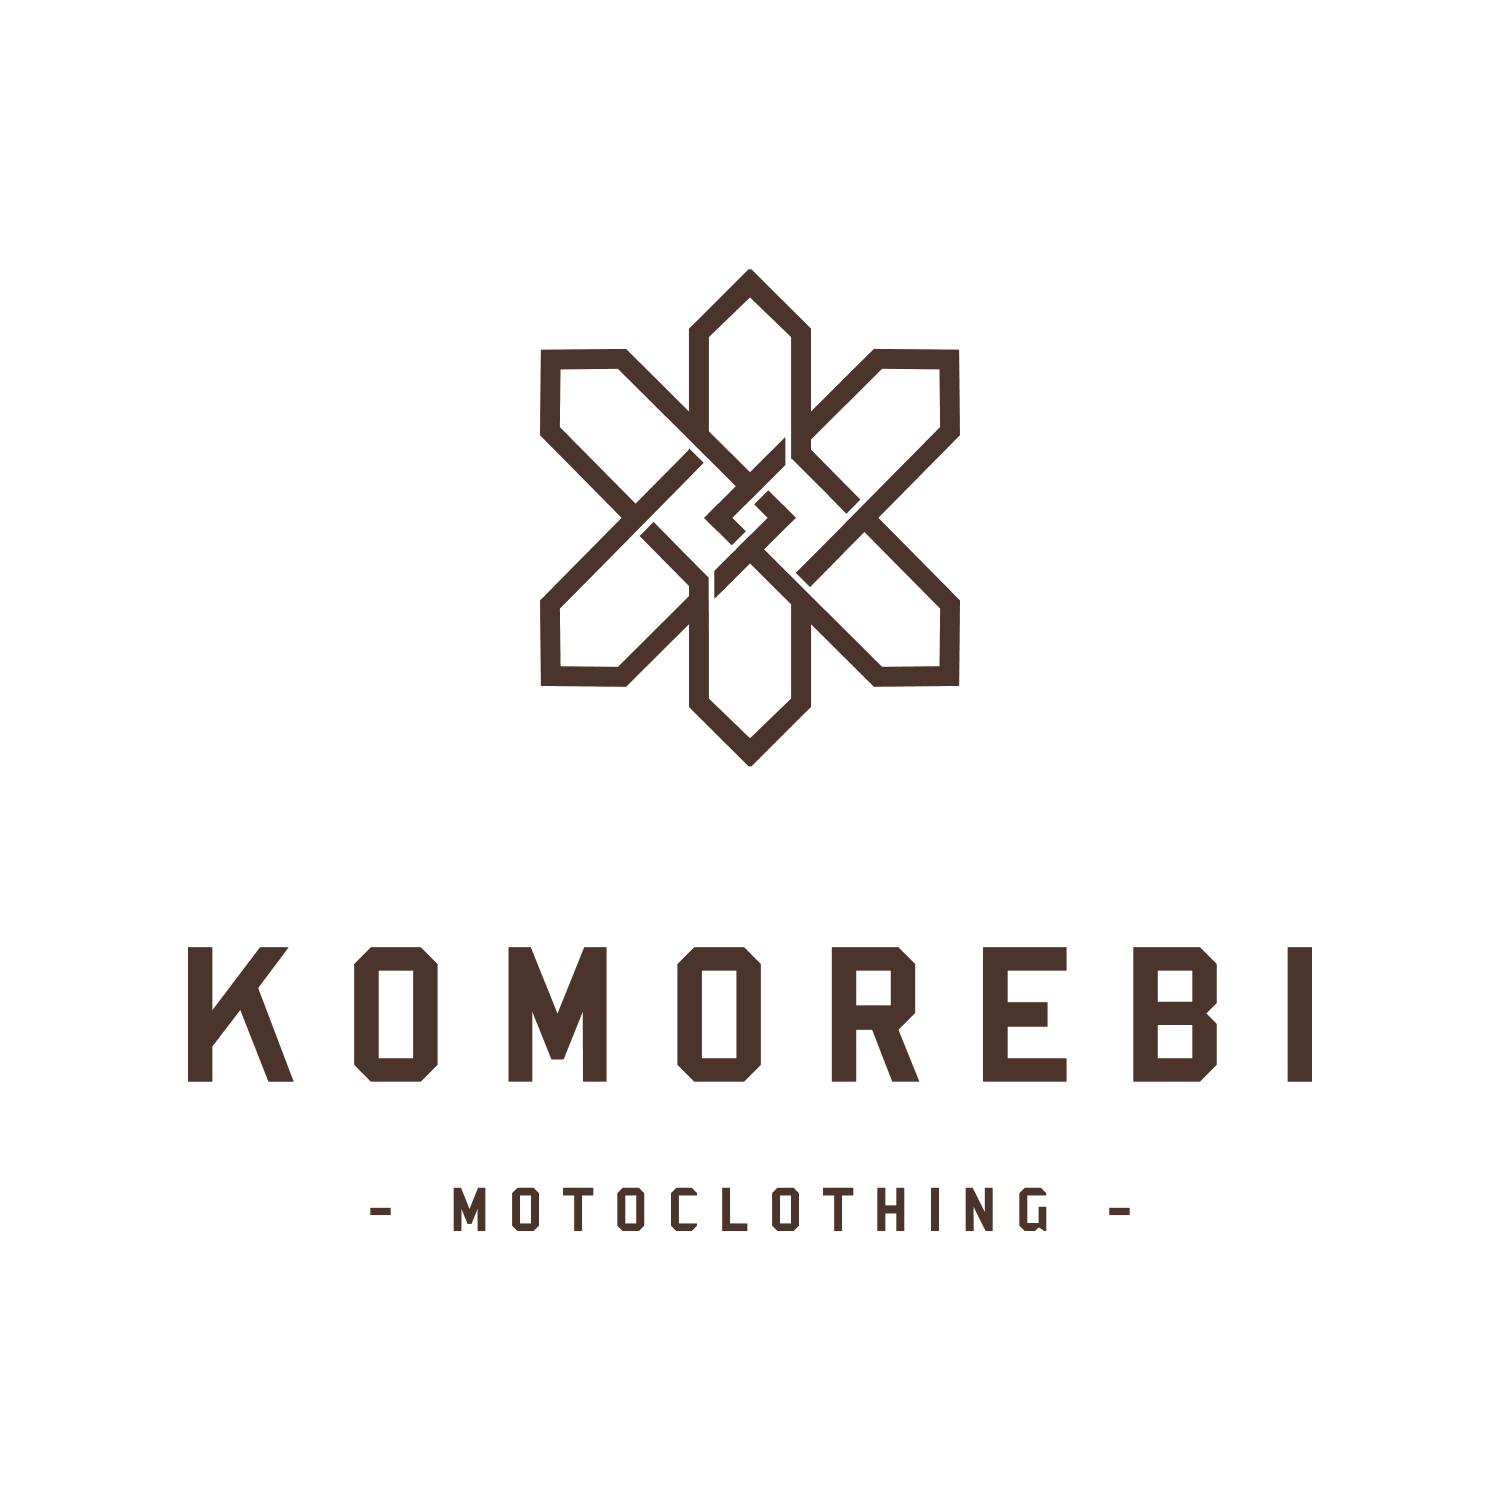 naming motoclothing move logo 01 design komorebi branding narrative 